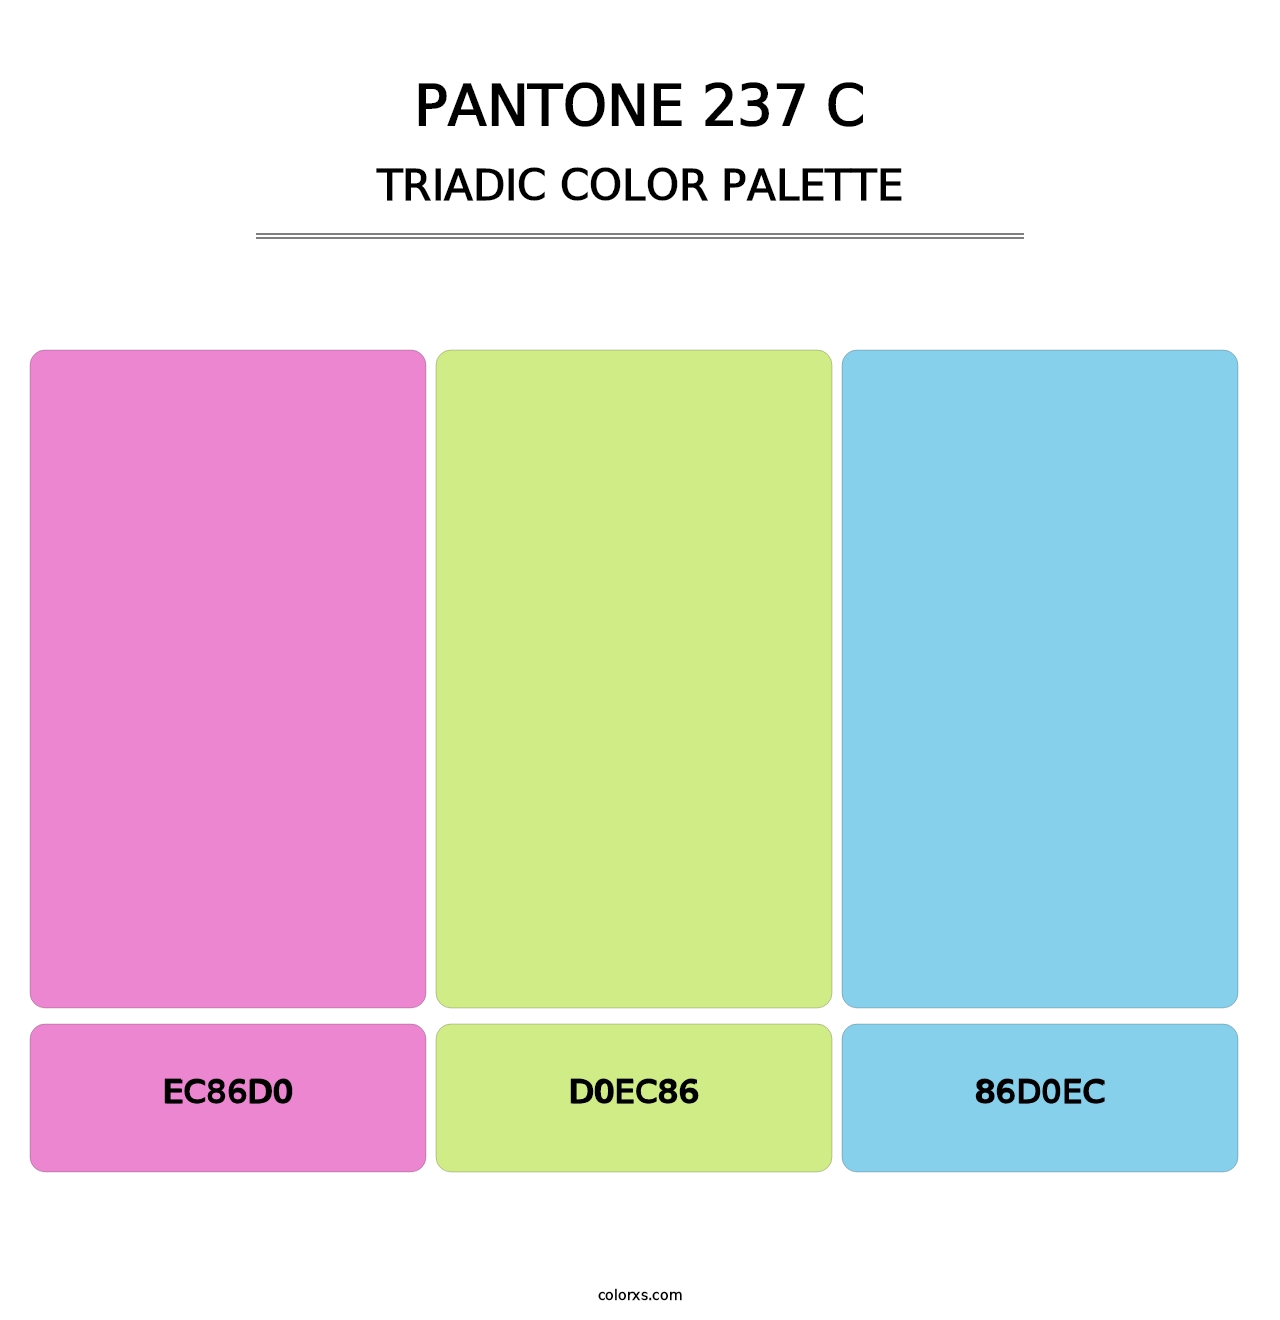 PANTONE 237 C - Triadic Color Palette